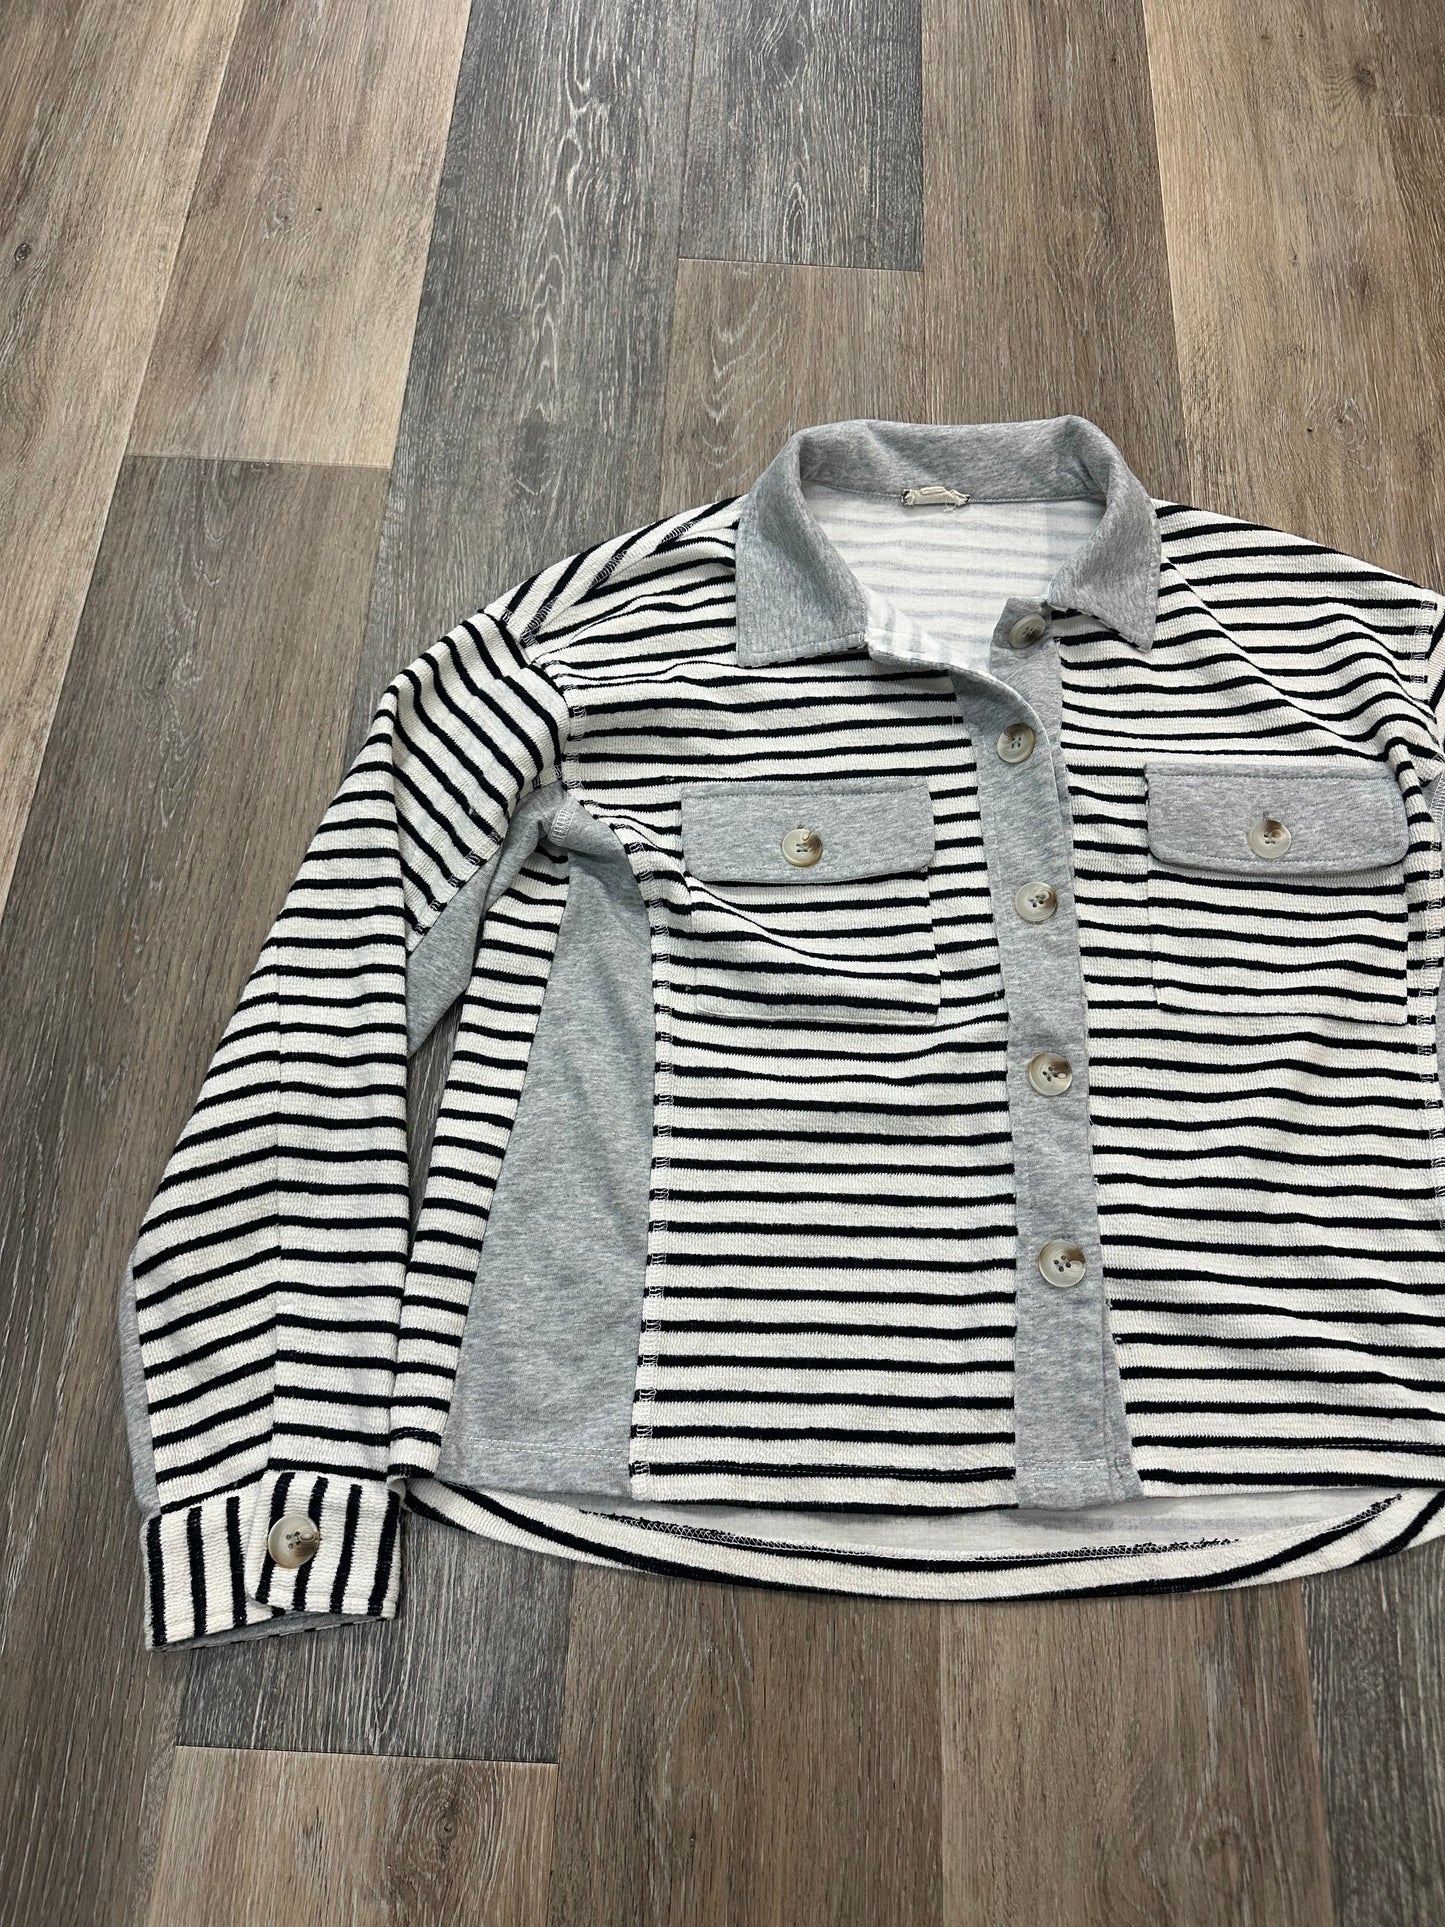 Grey Jacket Shirt Hem & Thread, Size S